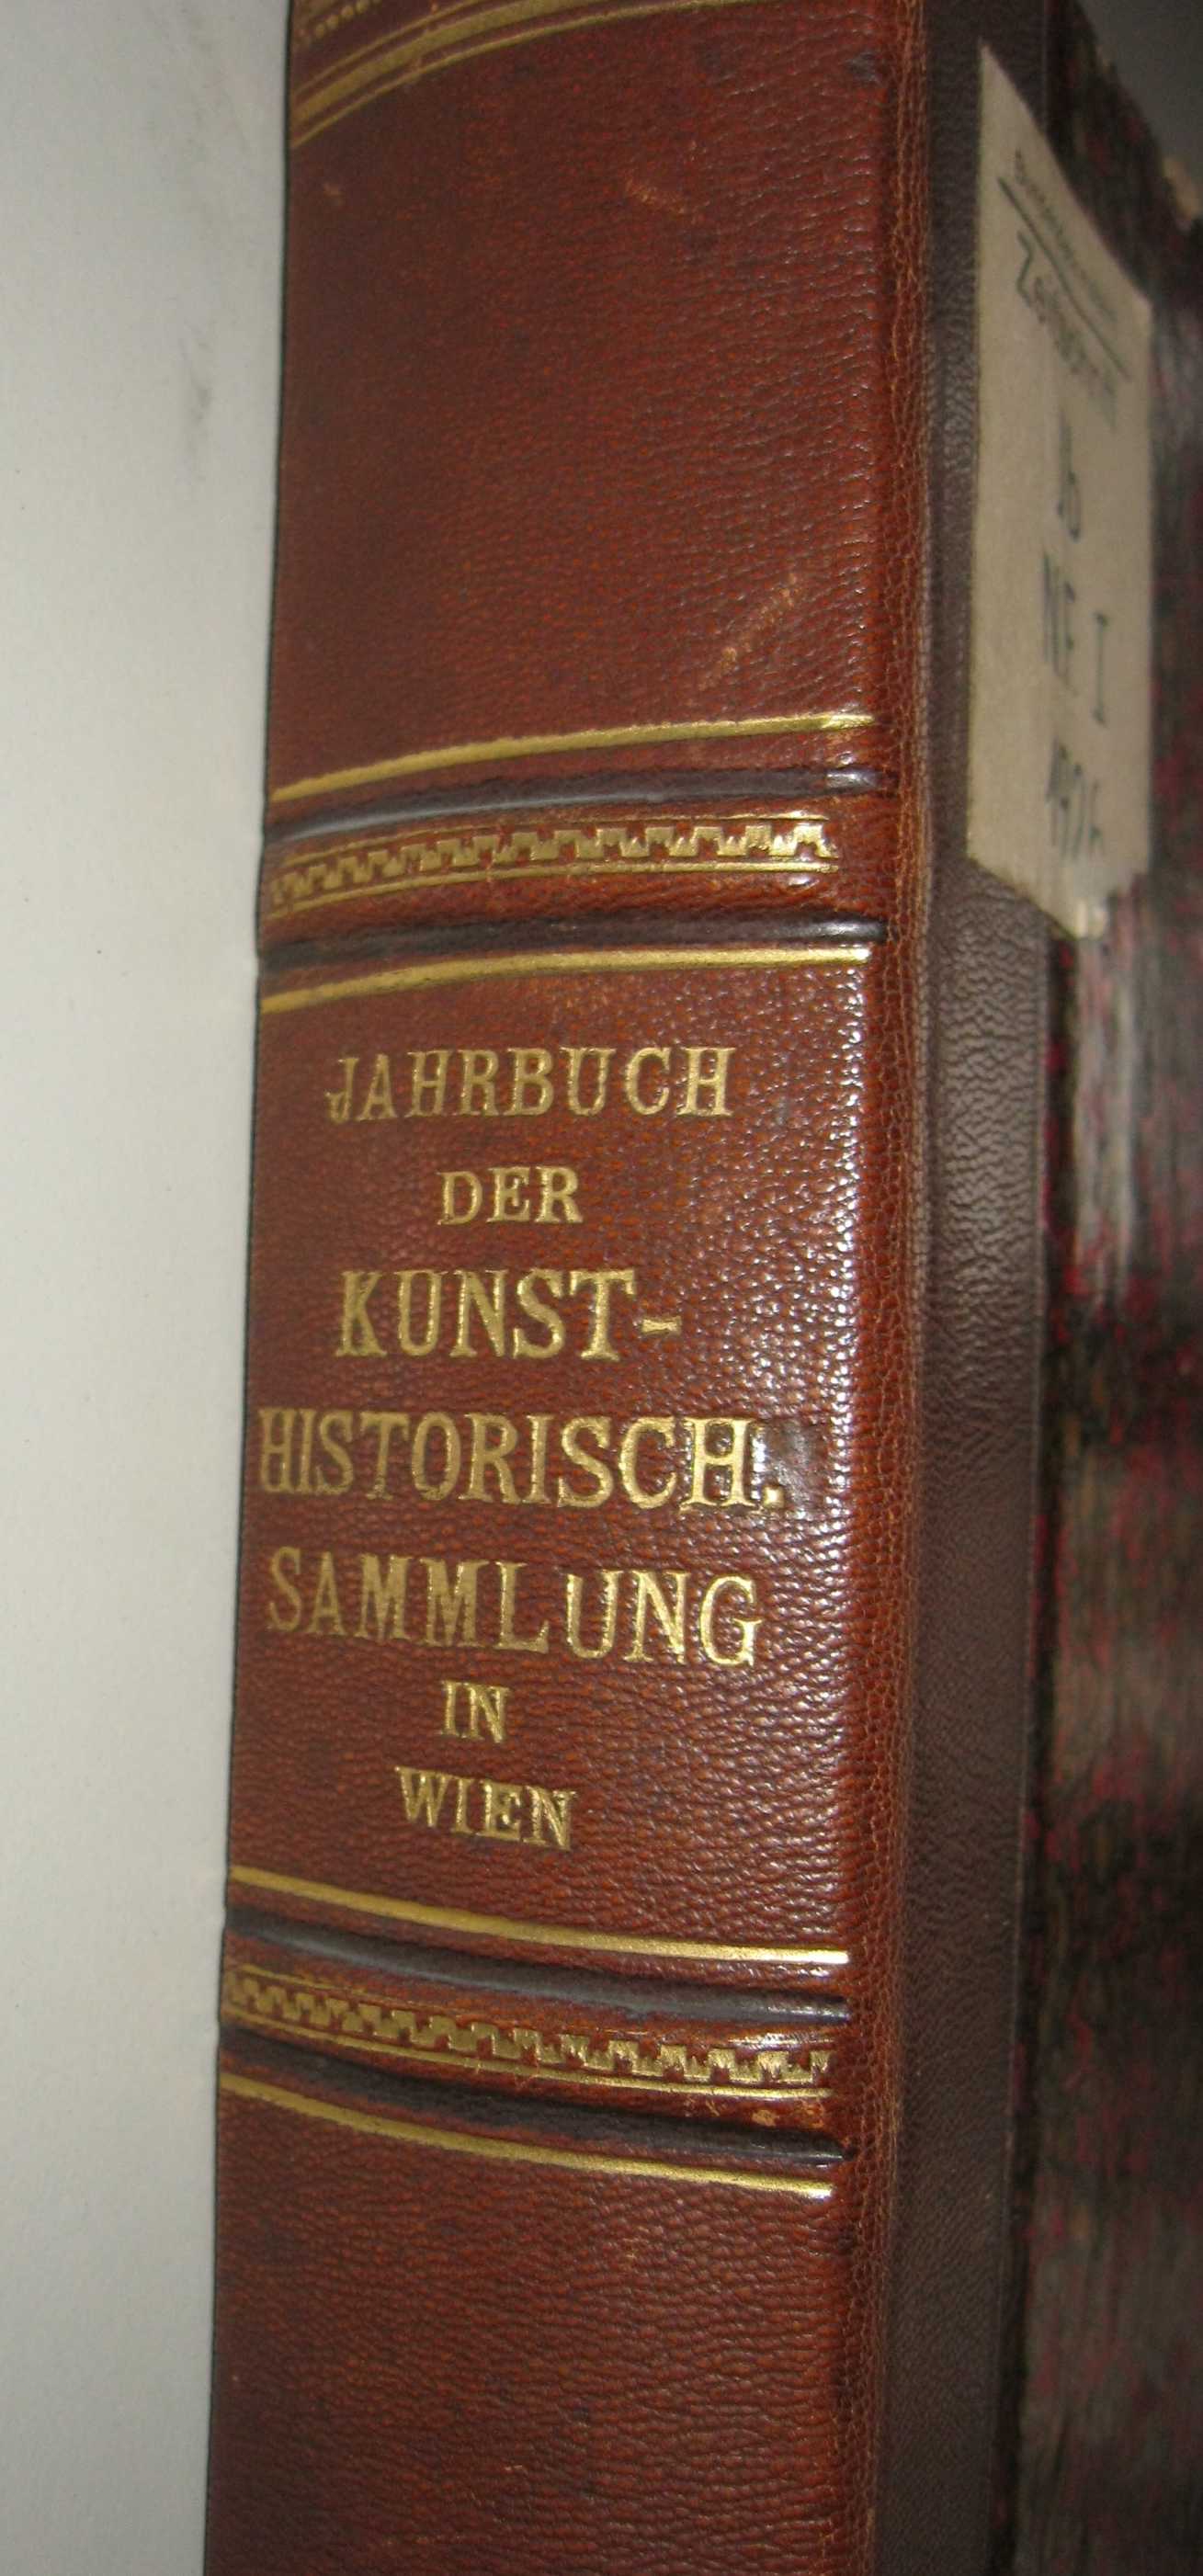 Jahrbuch spine